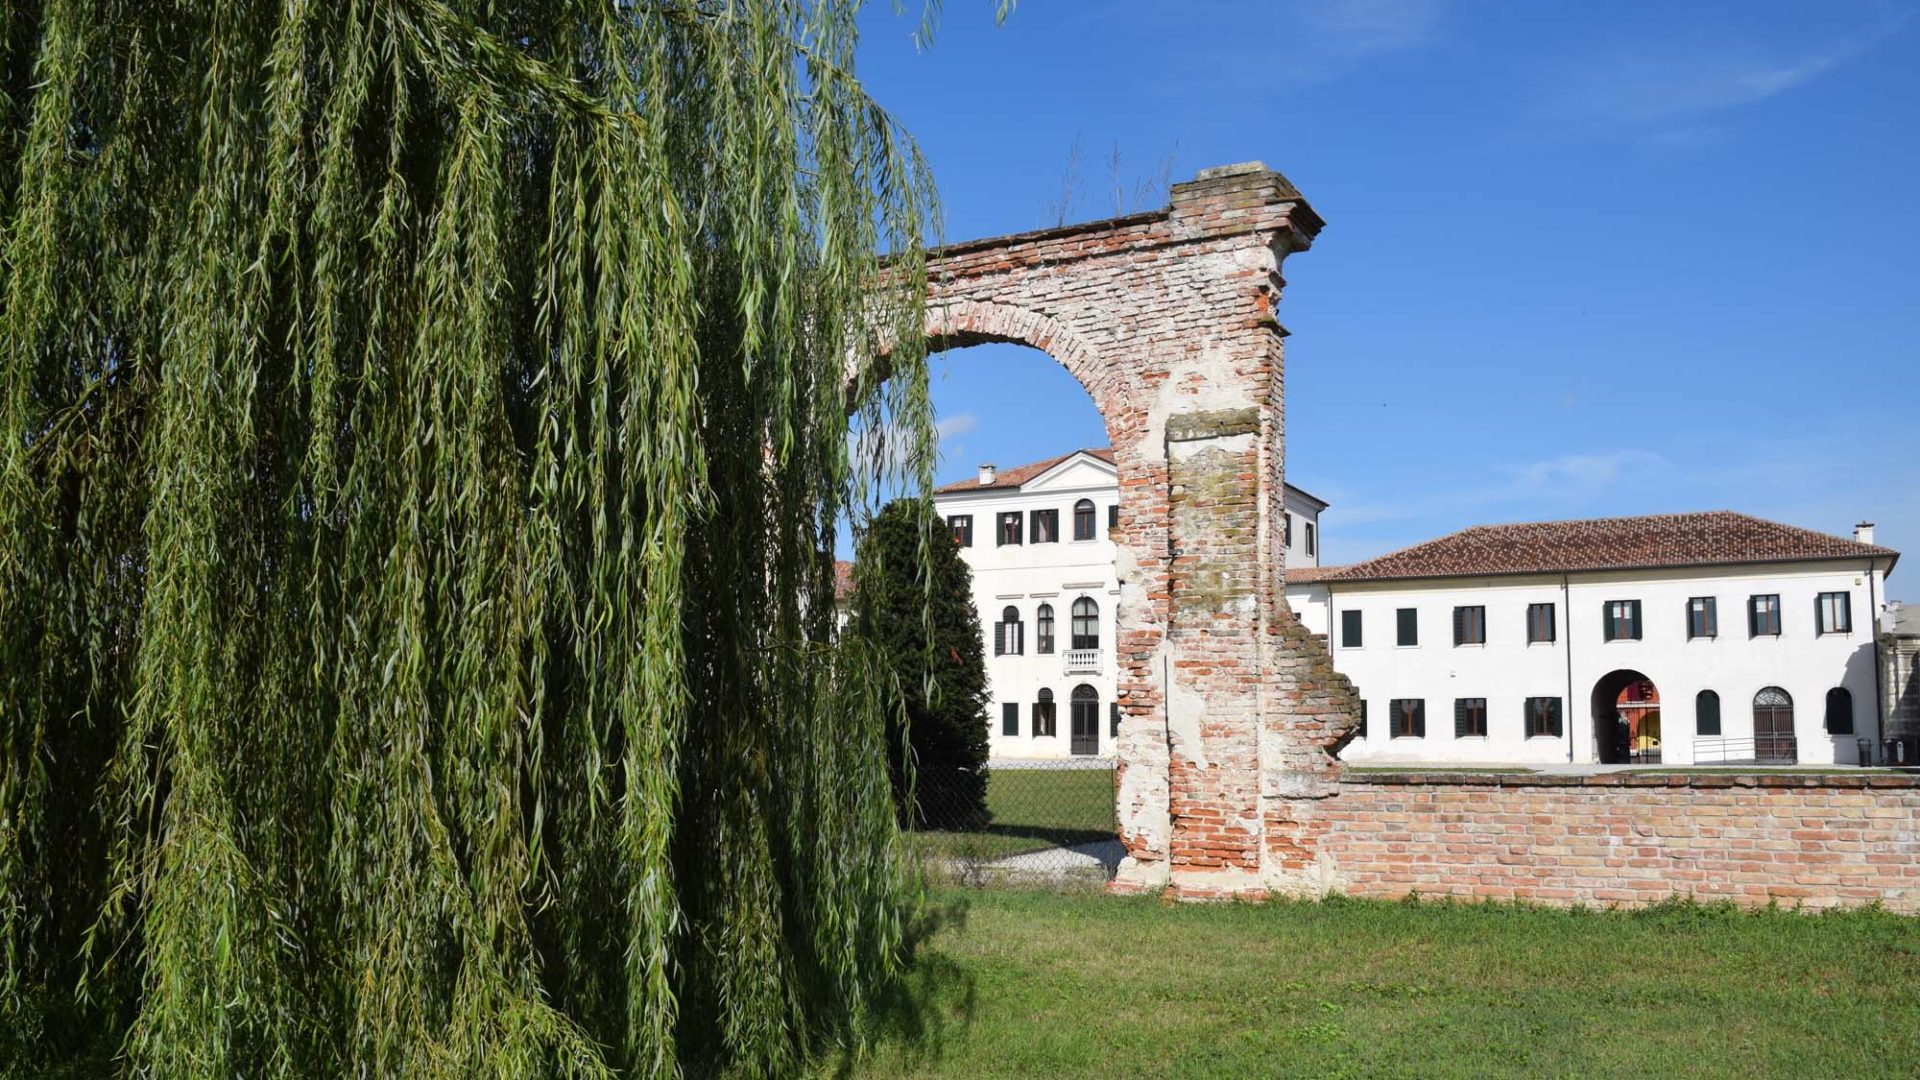 Villa pegolotto baglioni